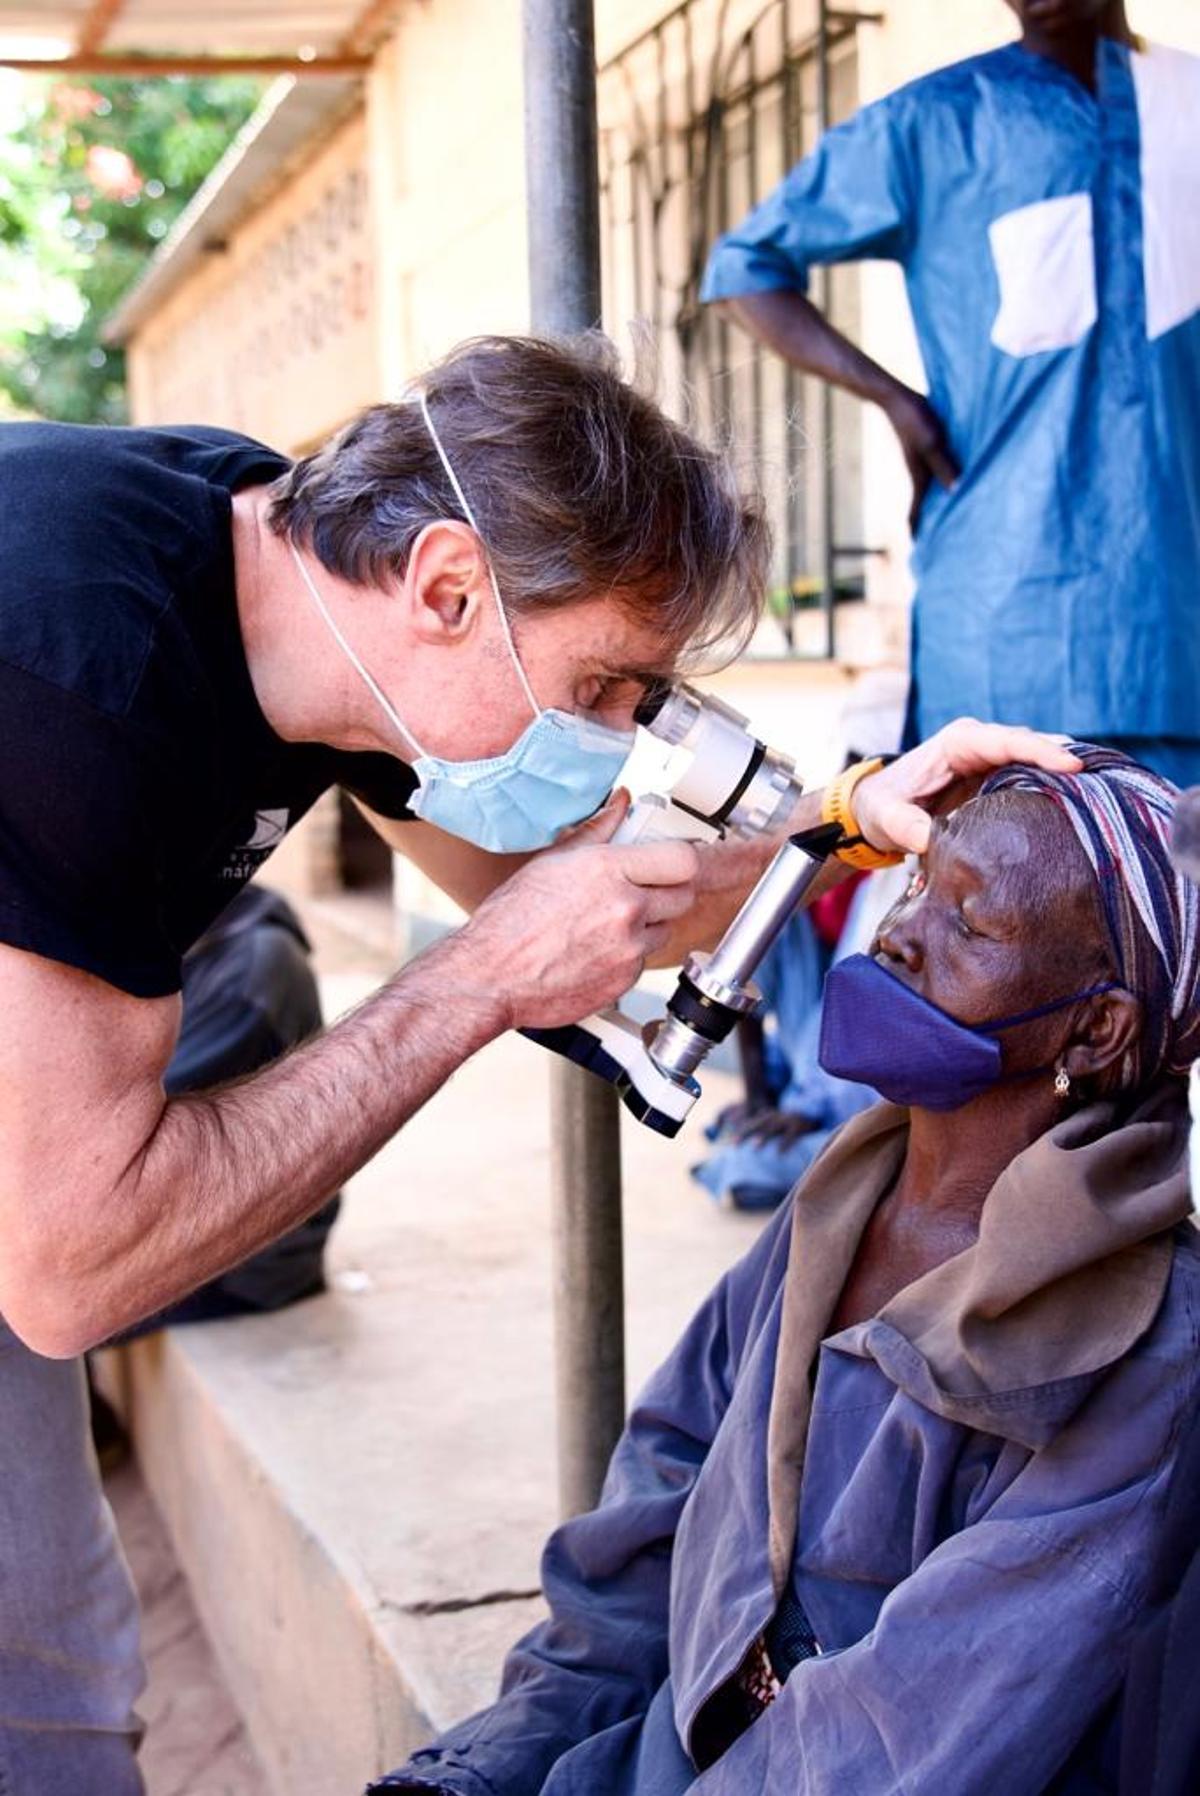 El oftalmólogo ha desarrollado 40 campañas benéficas de cirugía de cataratas en países en vías de desarrollo